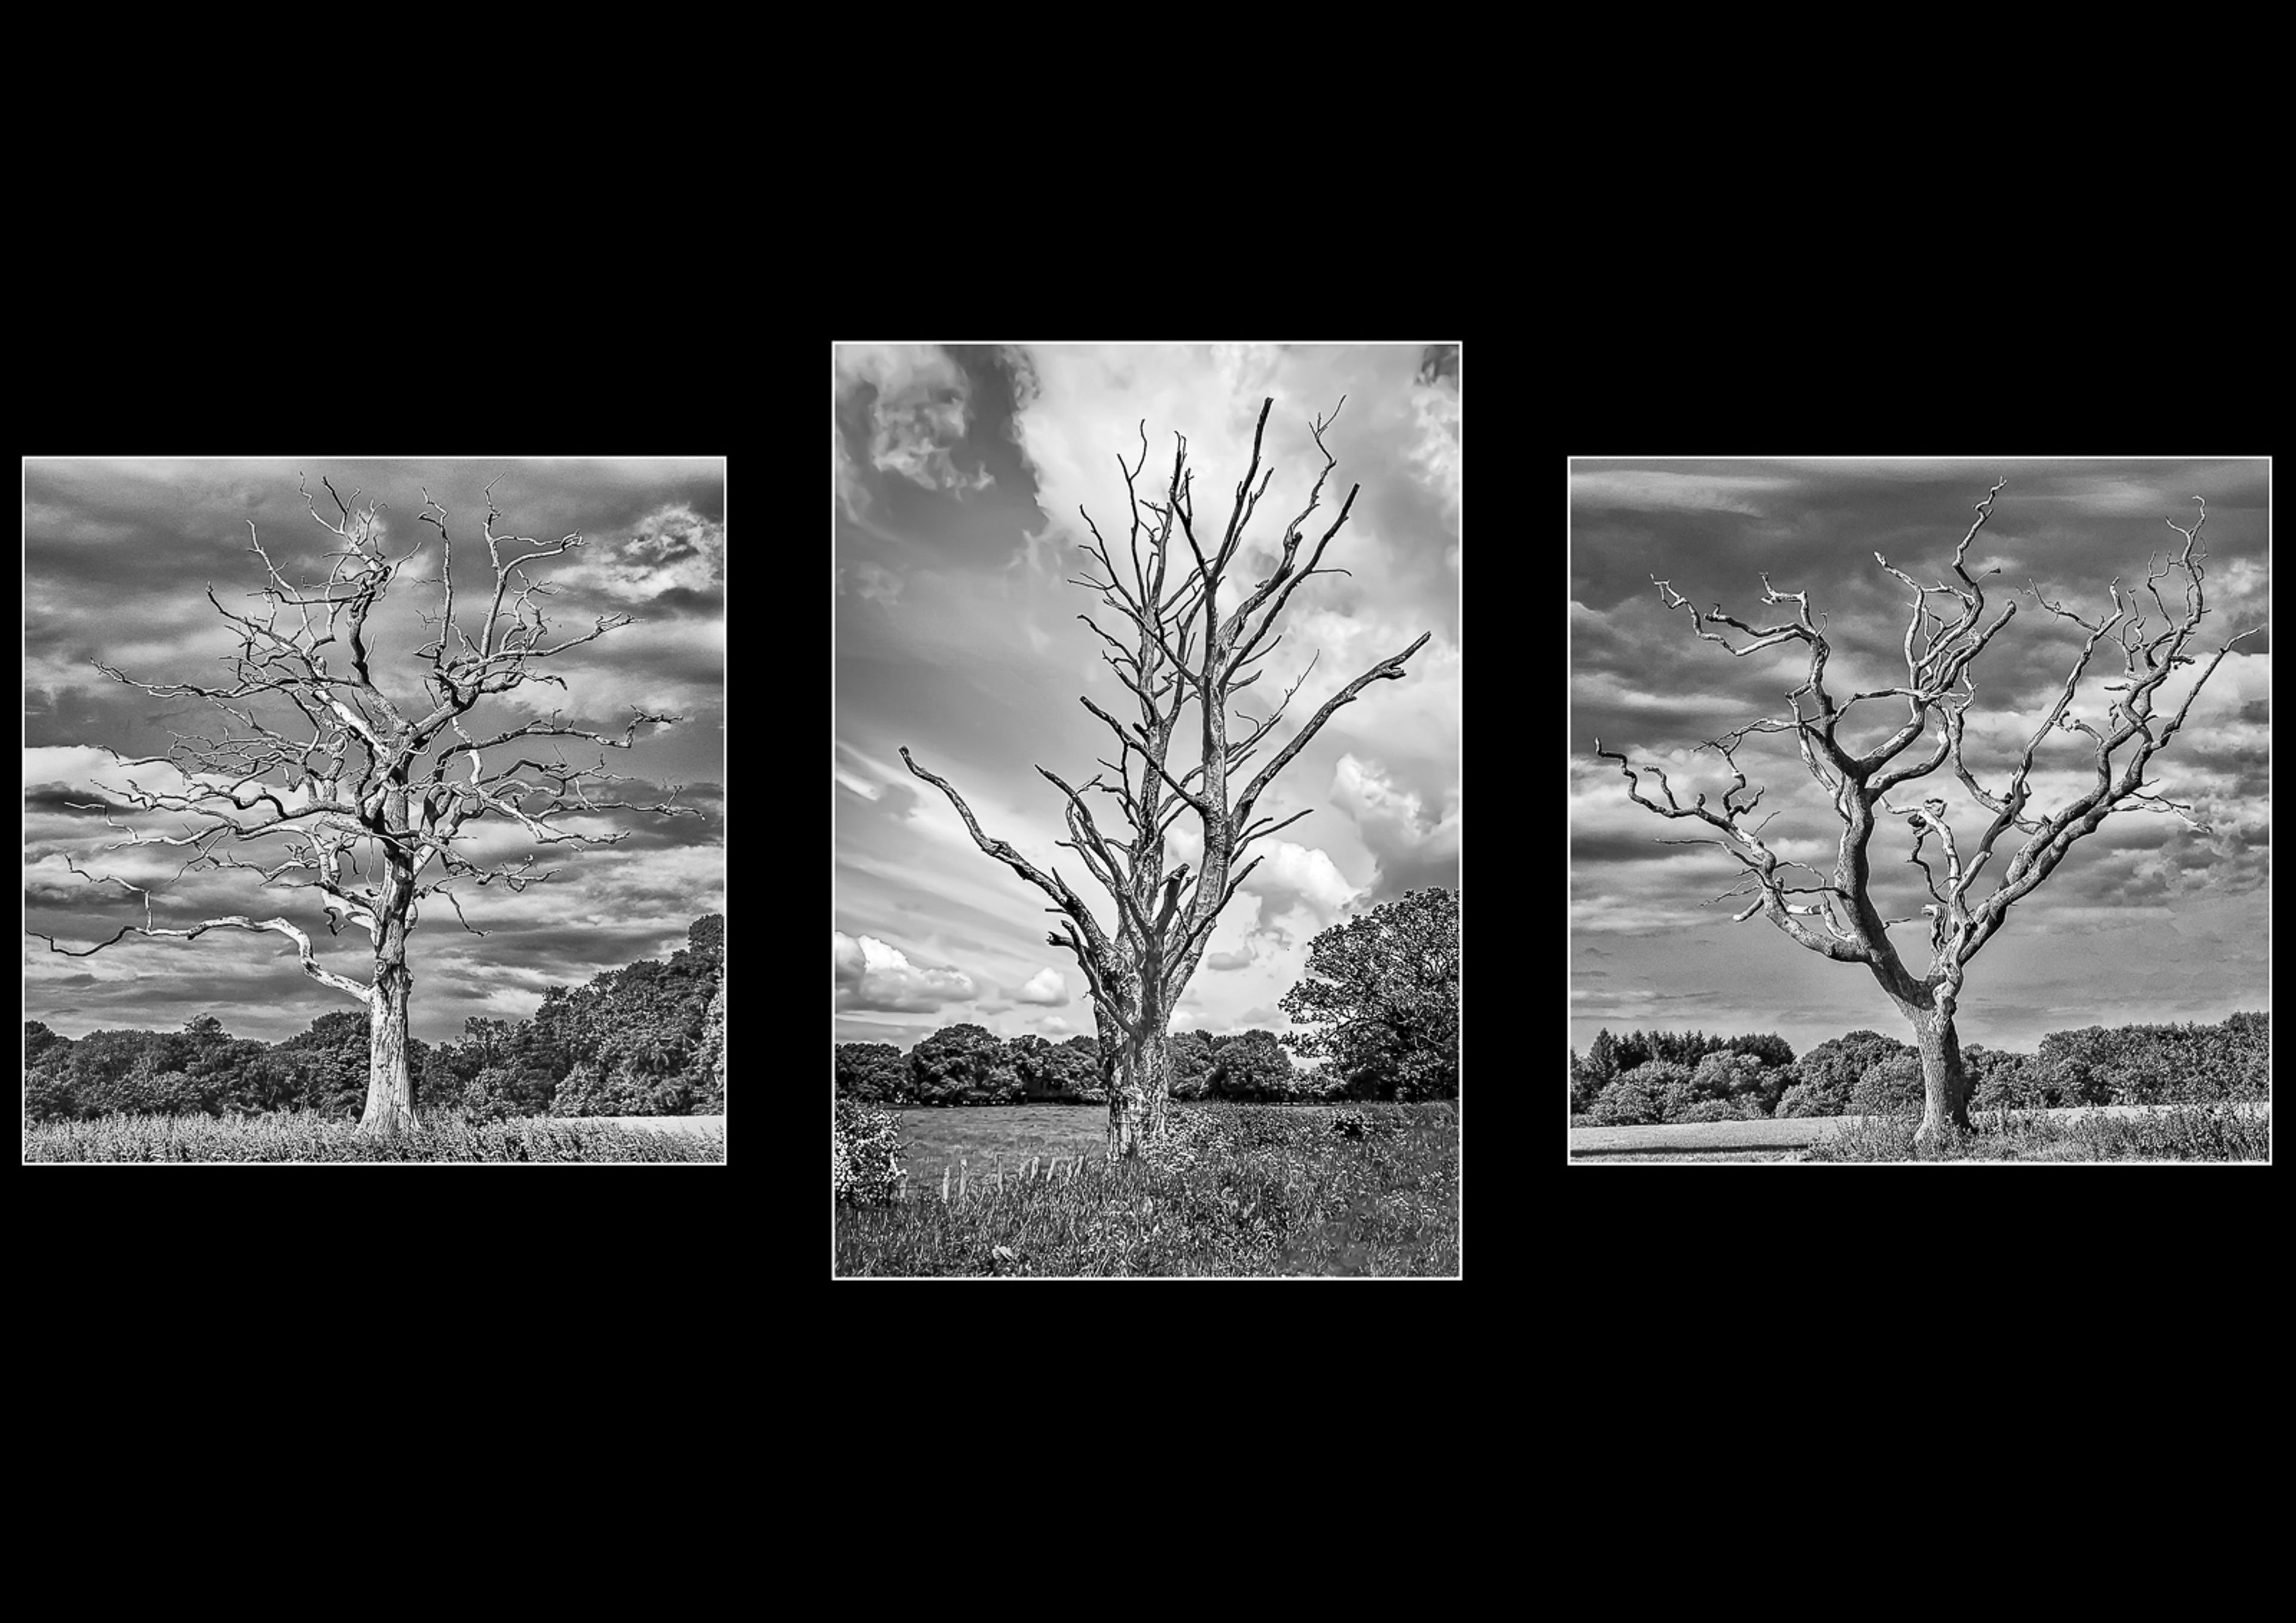 Dead Tree by David Beverley